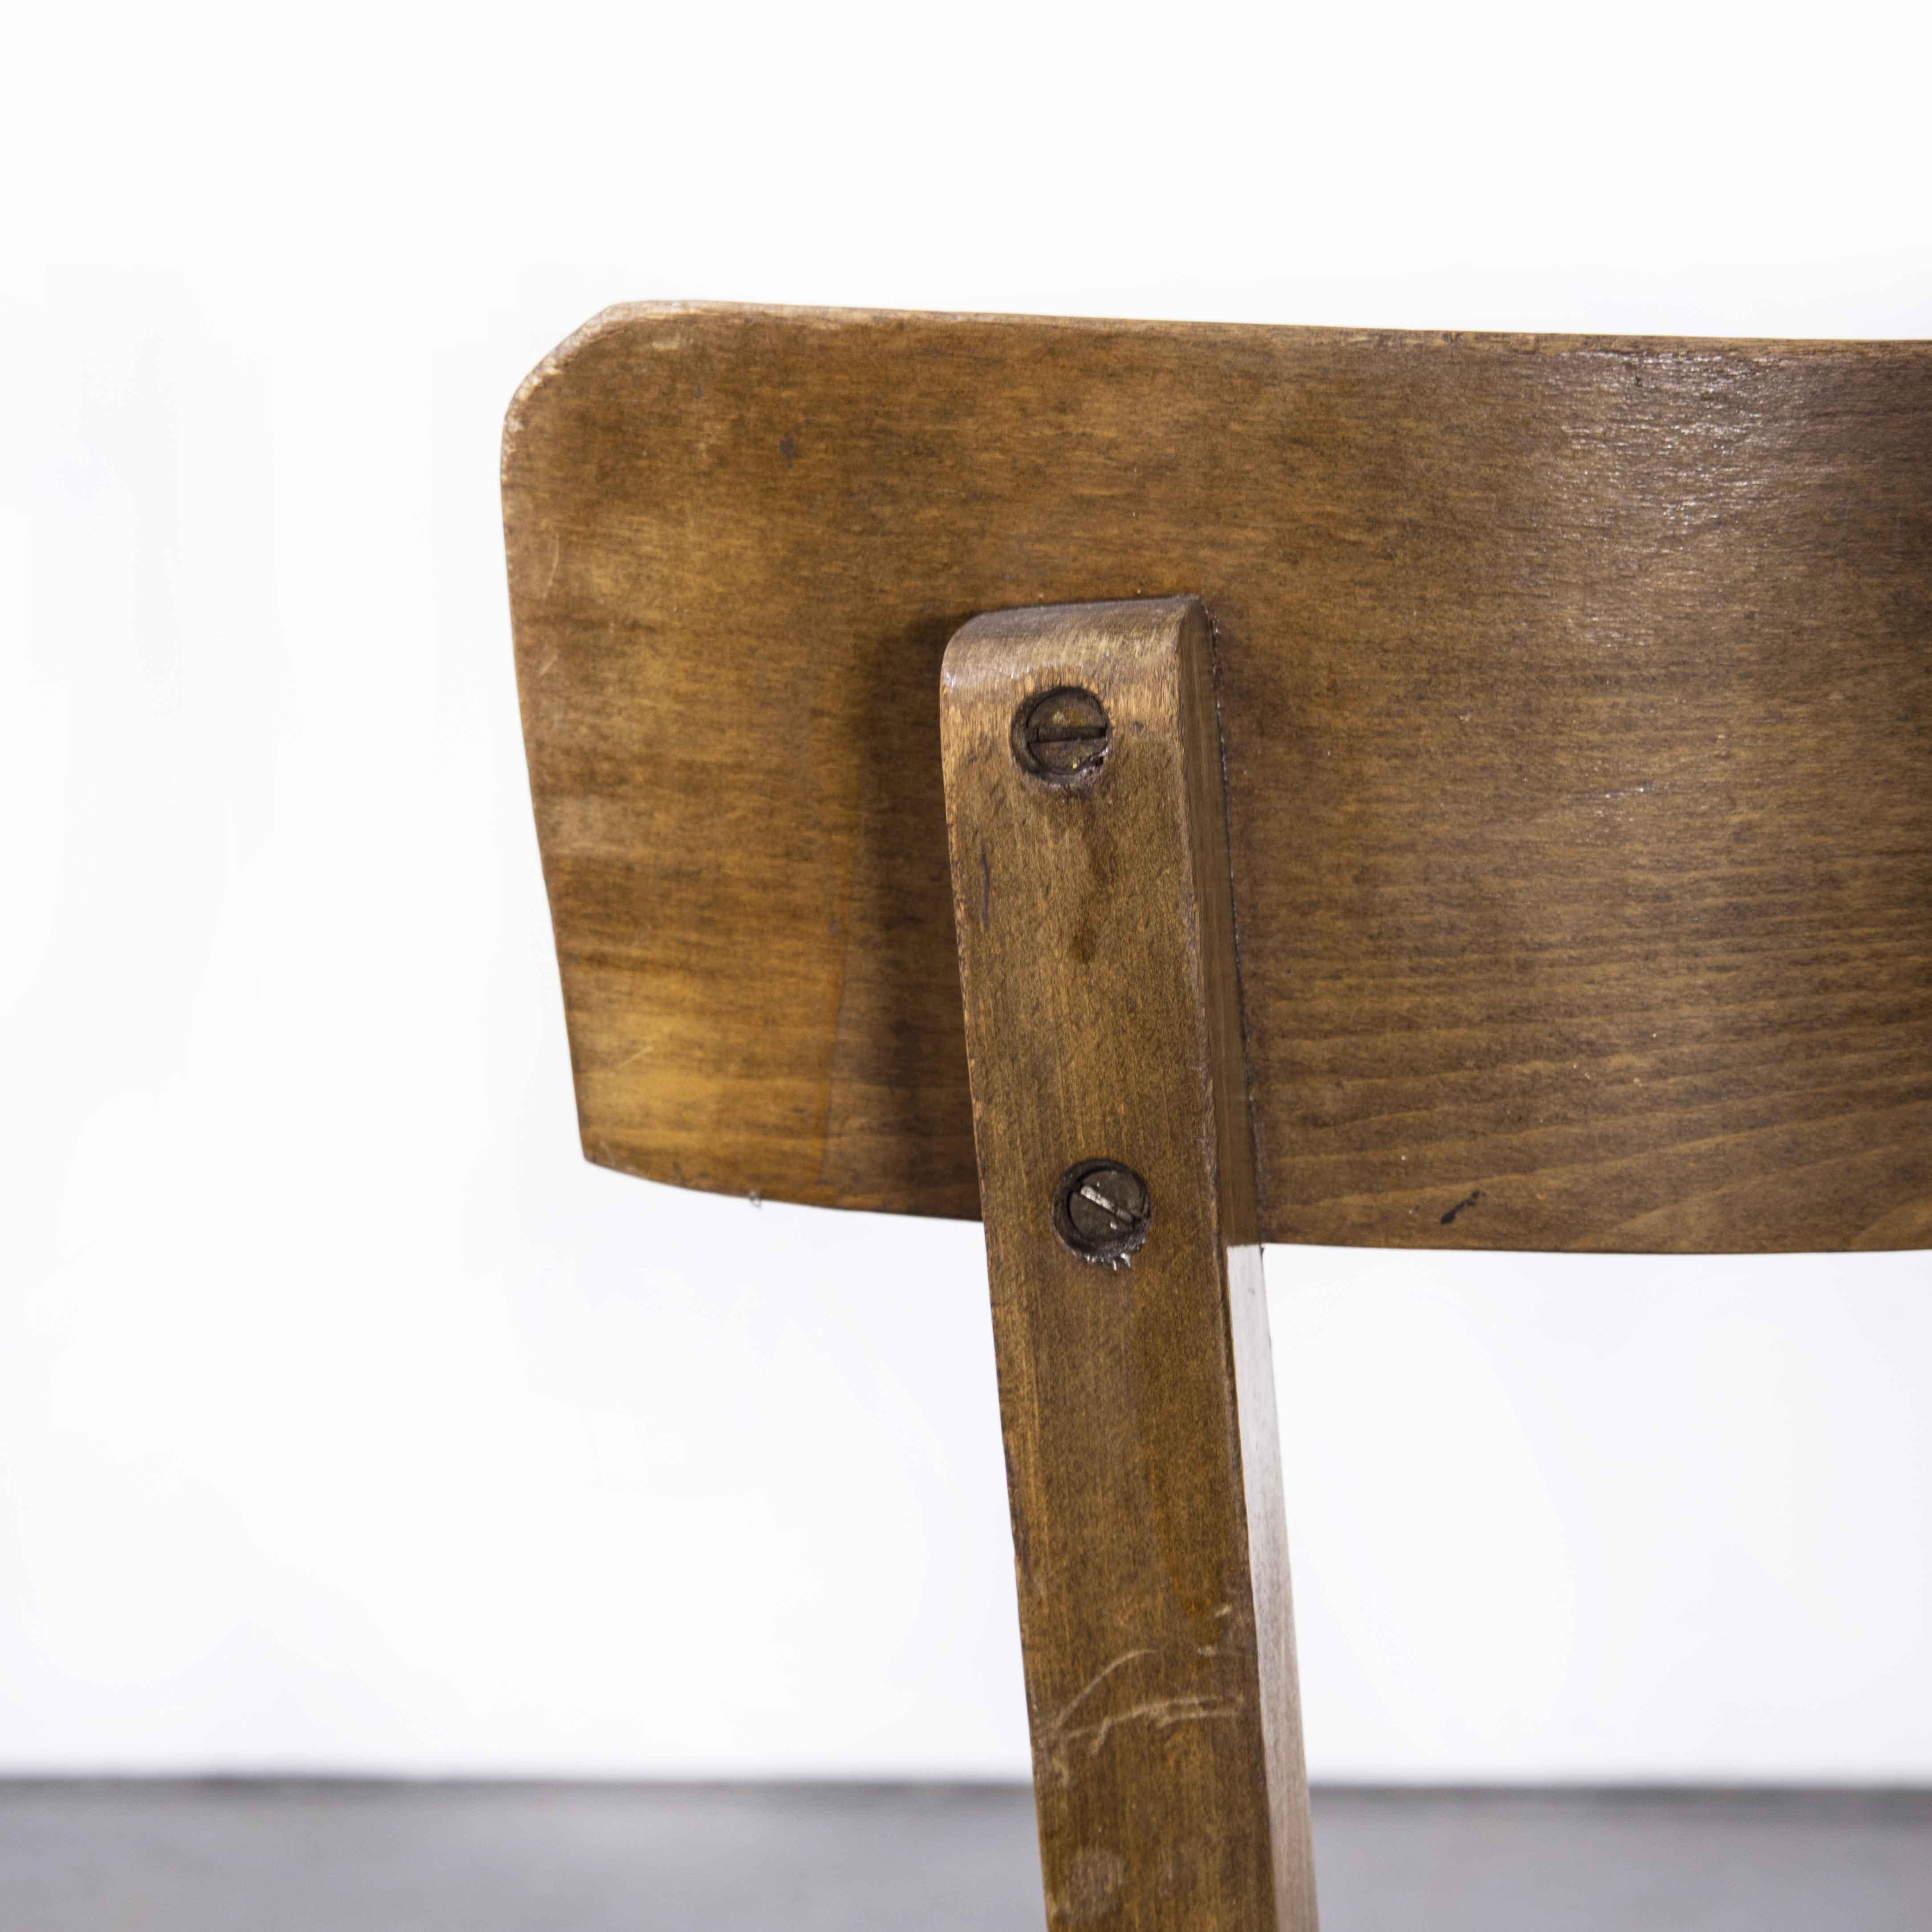 1950’s Baumann bentwood bistro dining chair – single bar back – set of six (Model 1359)
1950’s Baumann bentwood bistro dining chair – single bar back – set of six. Classic Beech bistro chair made in France by the maker Baumann. Baumann is a